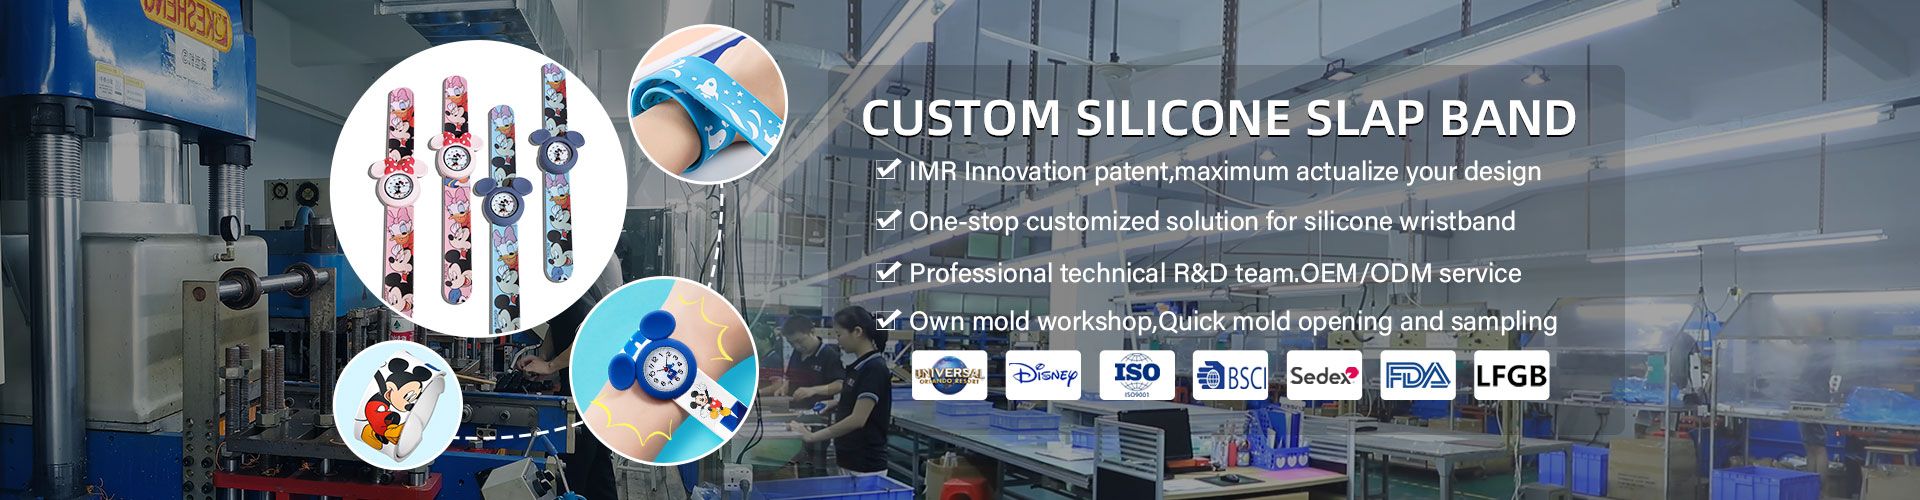 silicone slap band factory custom